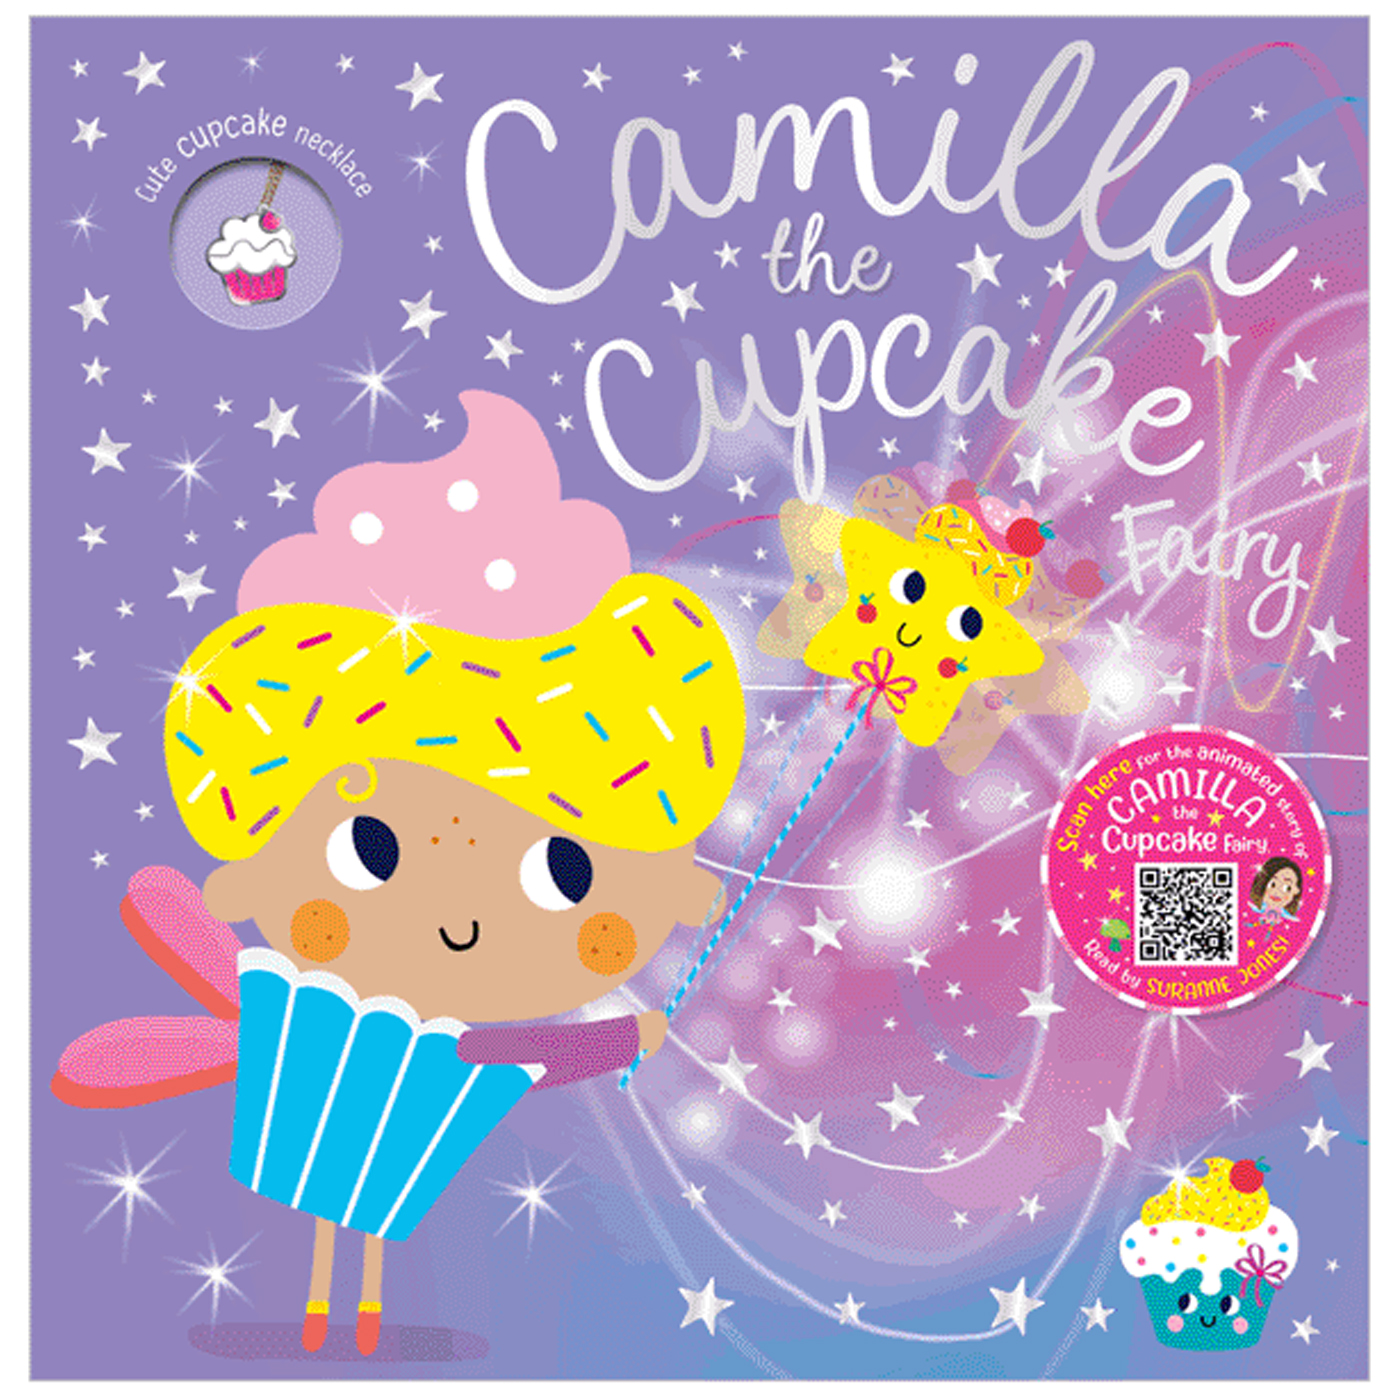  Camilla The Cupcake Fairy